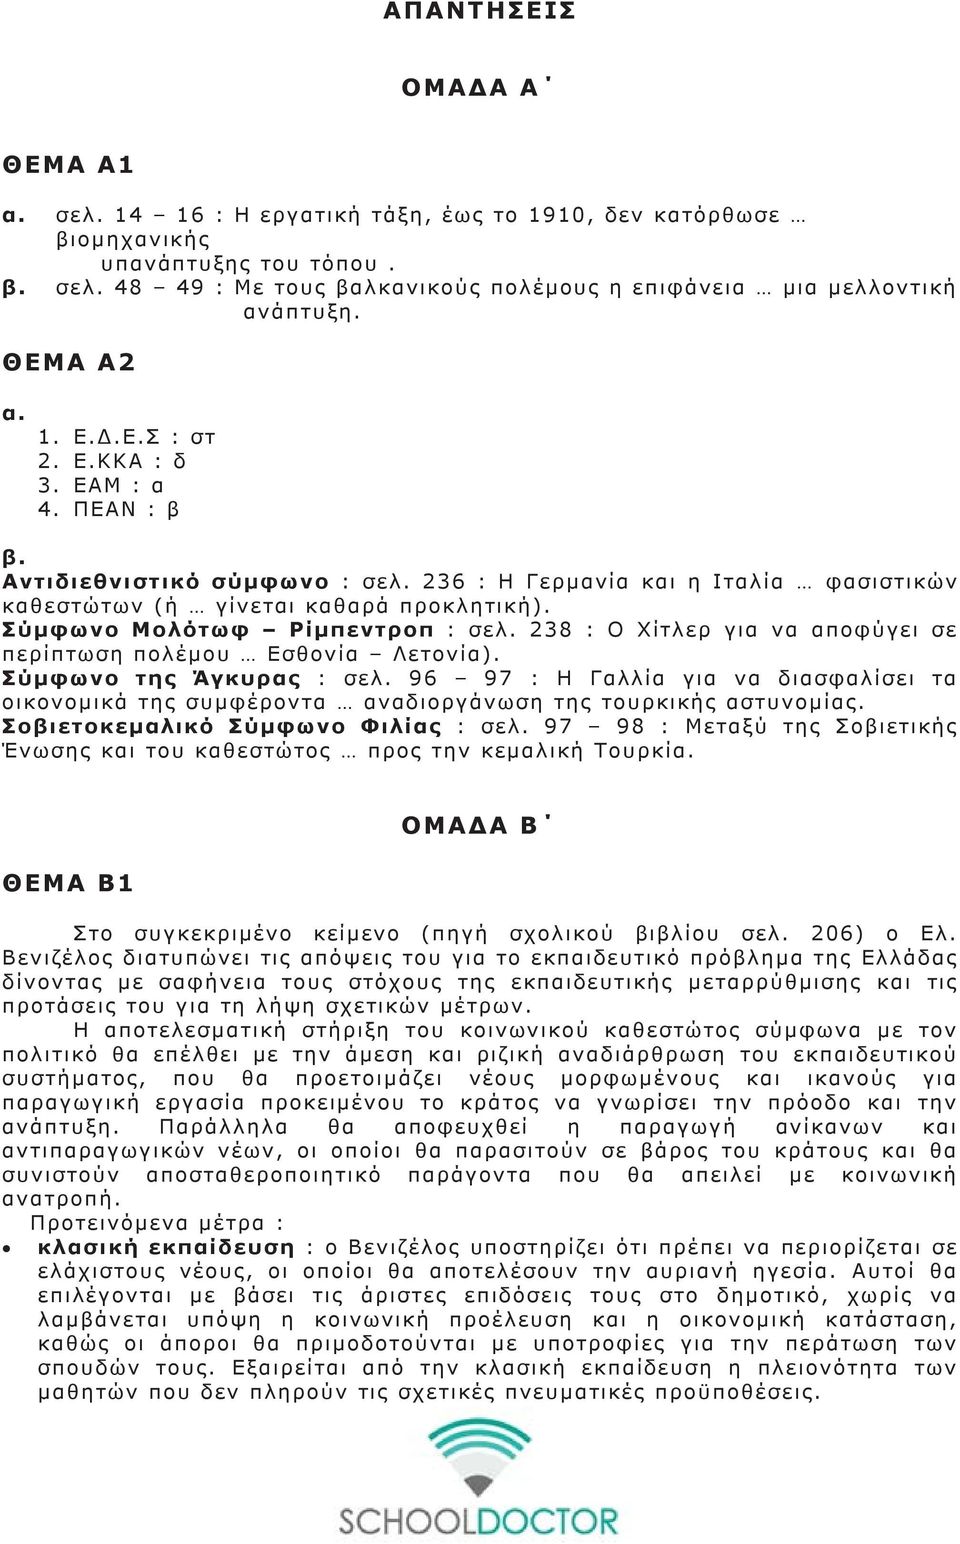 Σύμφωνο Μολότωφ Ρίμπεντροπ : σελ. 238 : Ο Χίτλερ για να αποφύγει σε περίπτωση πολέμου Εσθονία Λετονία). Σύμφωνο της Άγκυρας : σελ.